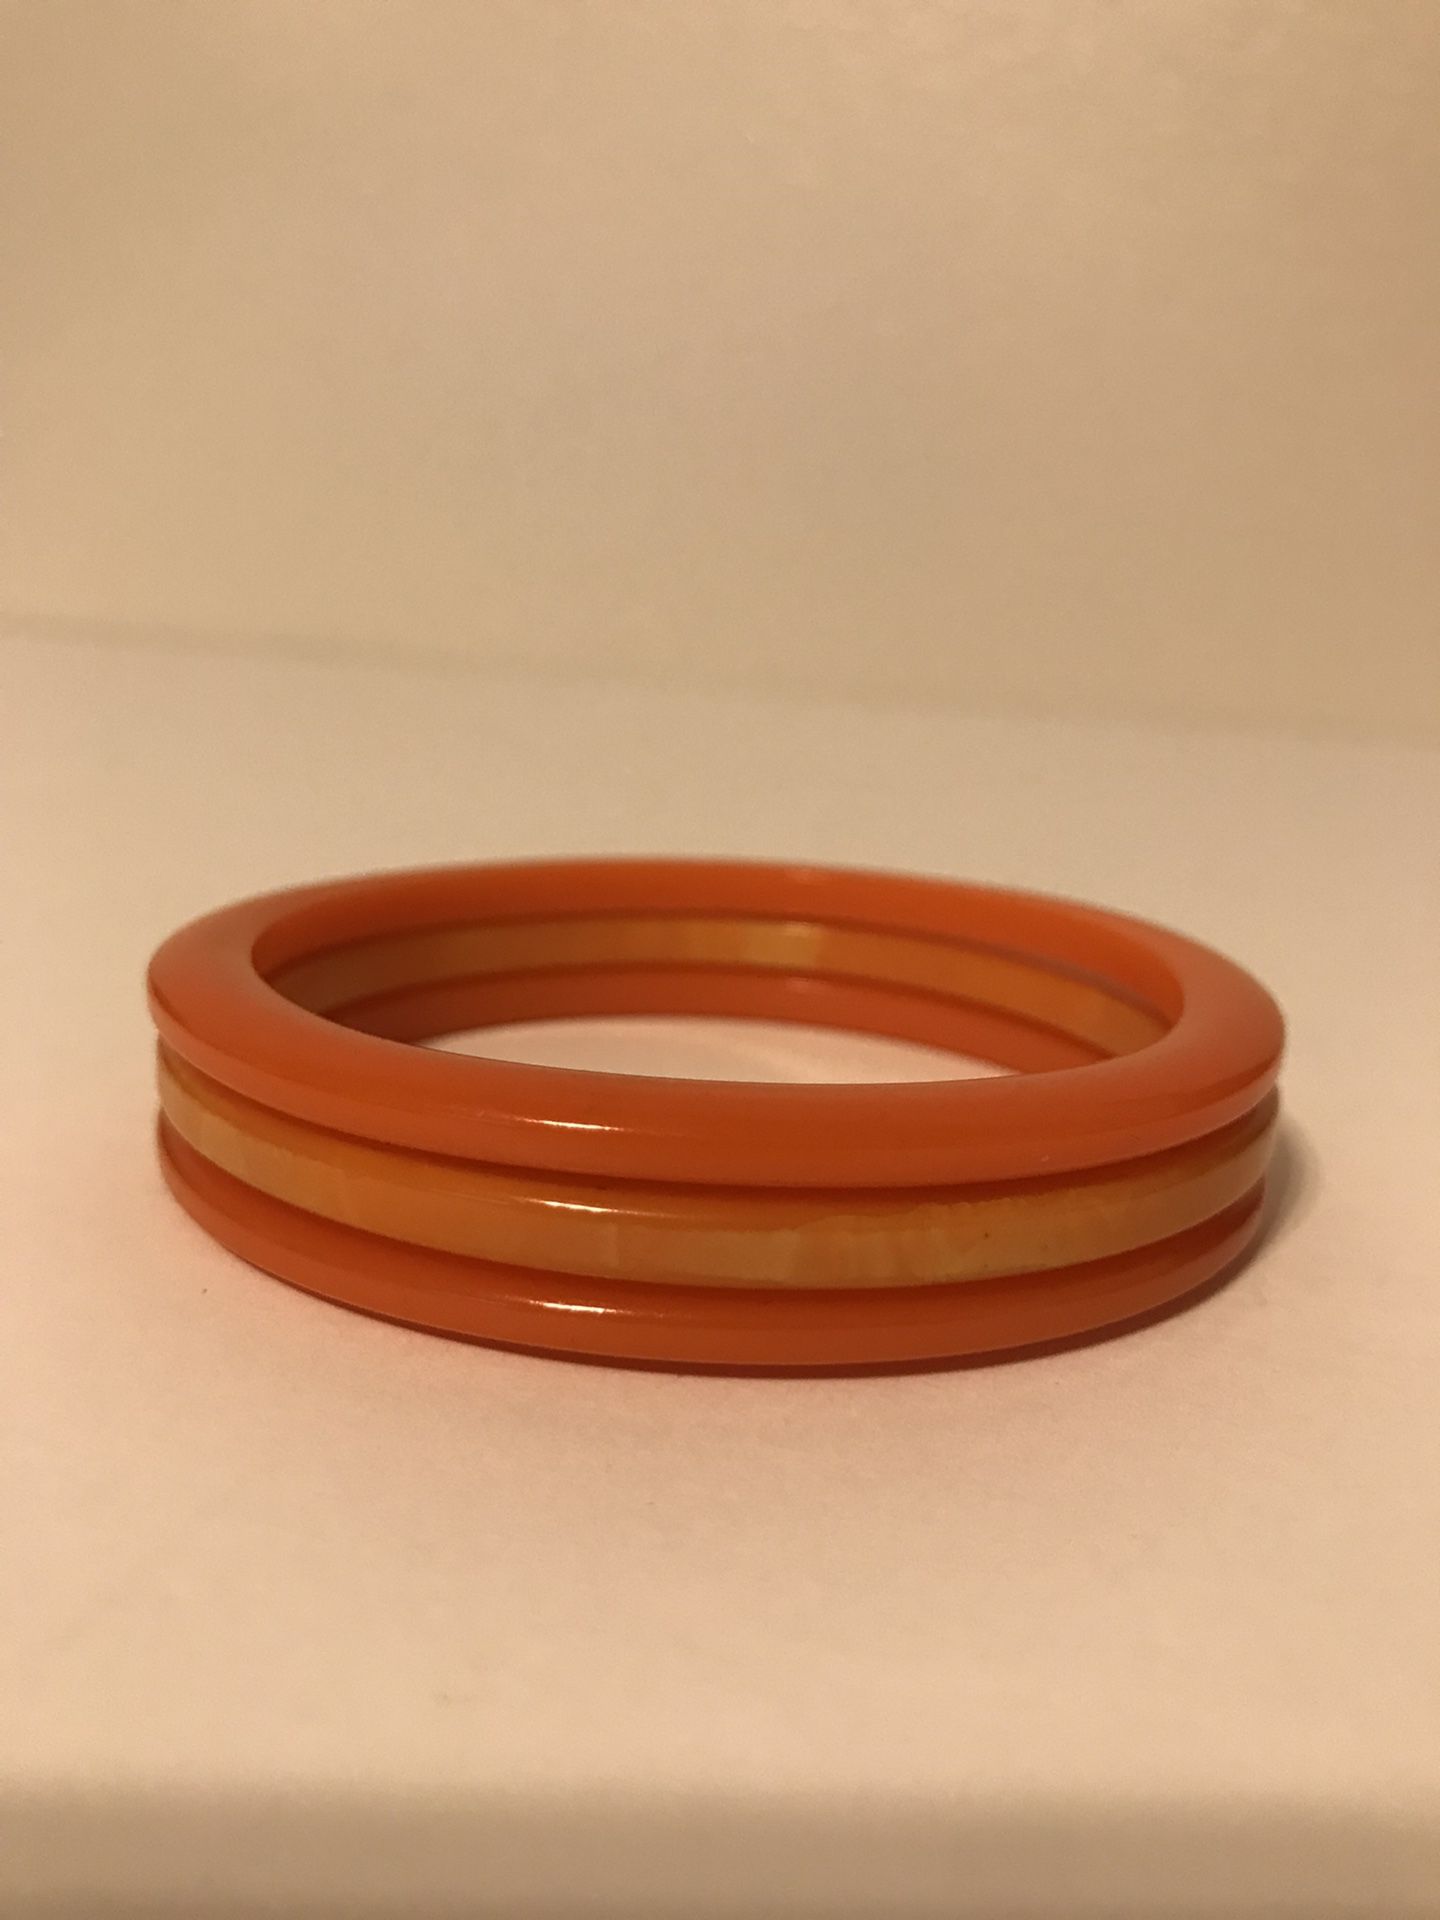 Antique Set of 3 Orange BakeLite Bangle Bracelets 3” Wide 2 1/2” Interior